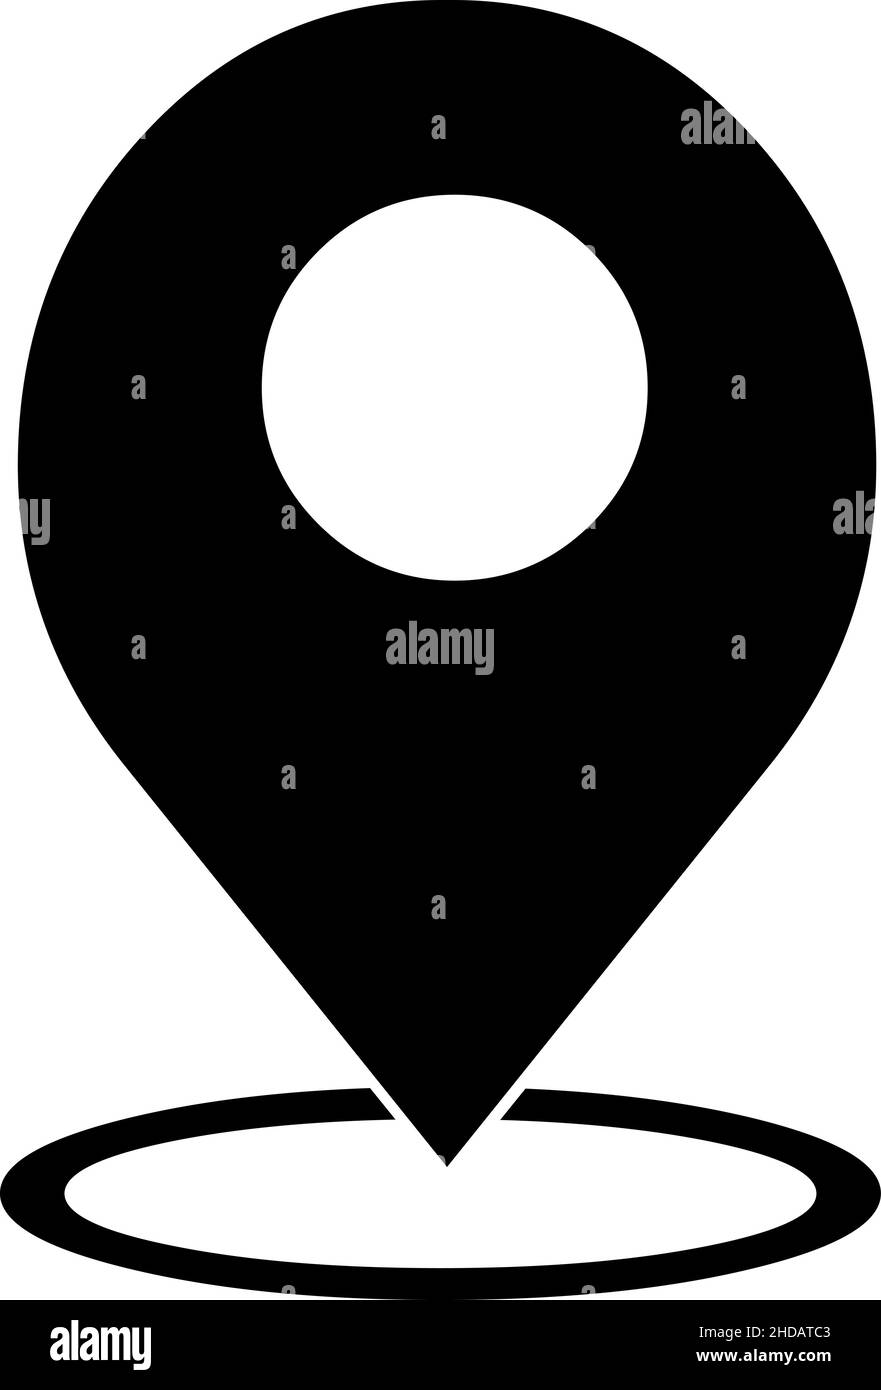 Ilustración vectorial del icono de silueta negra del gps (sistema de posicionamiento global) Ilustración del Vector